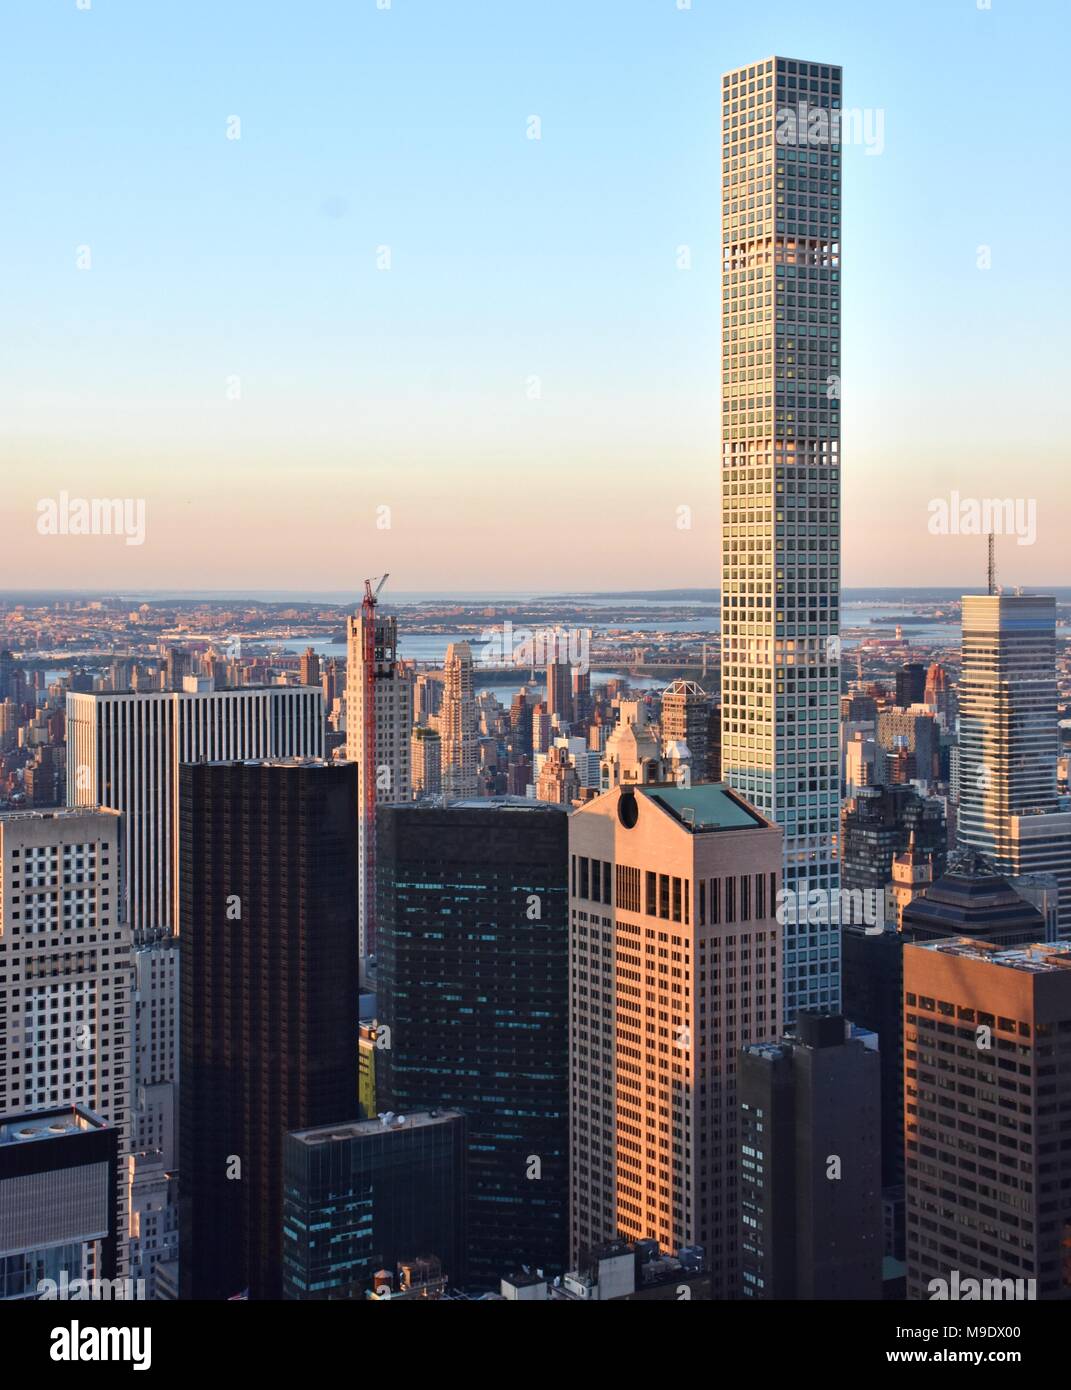 Il parco di 432 grattacielo a midtown Manhattan, il più alto edificio residenziale negli Stati Uniti. Foto Stock